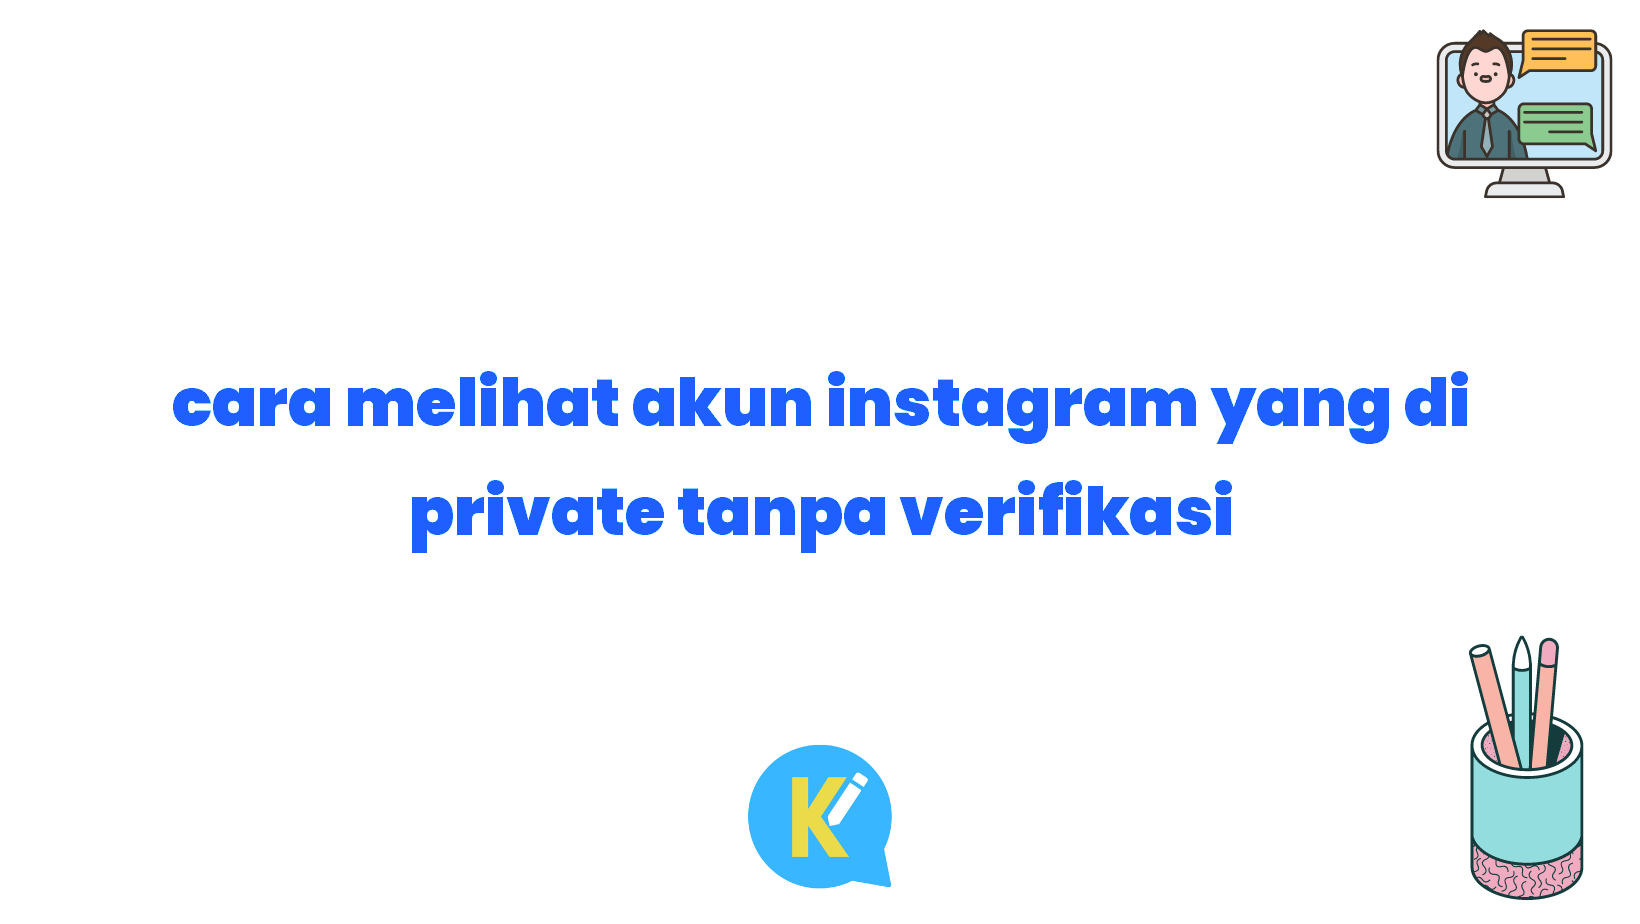 cara melihat akun instagram yang di private tanpa verifikasi